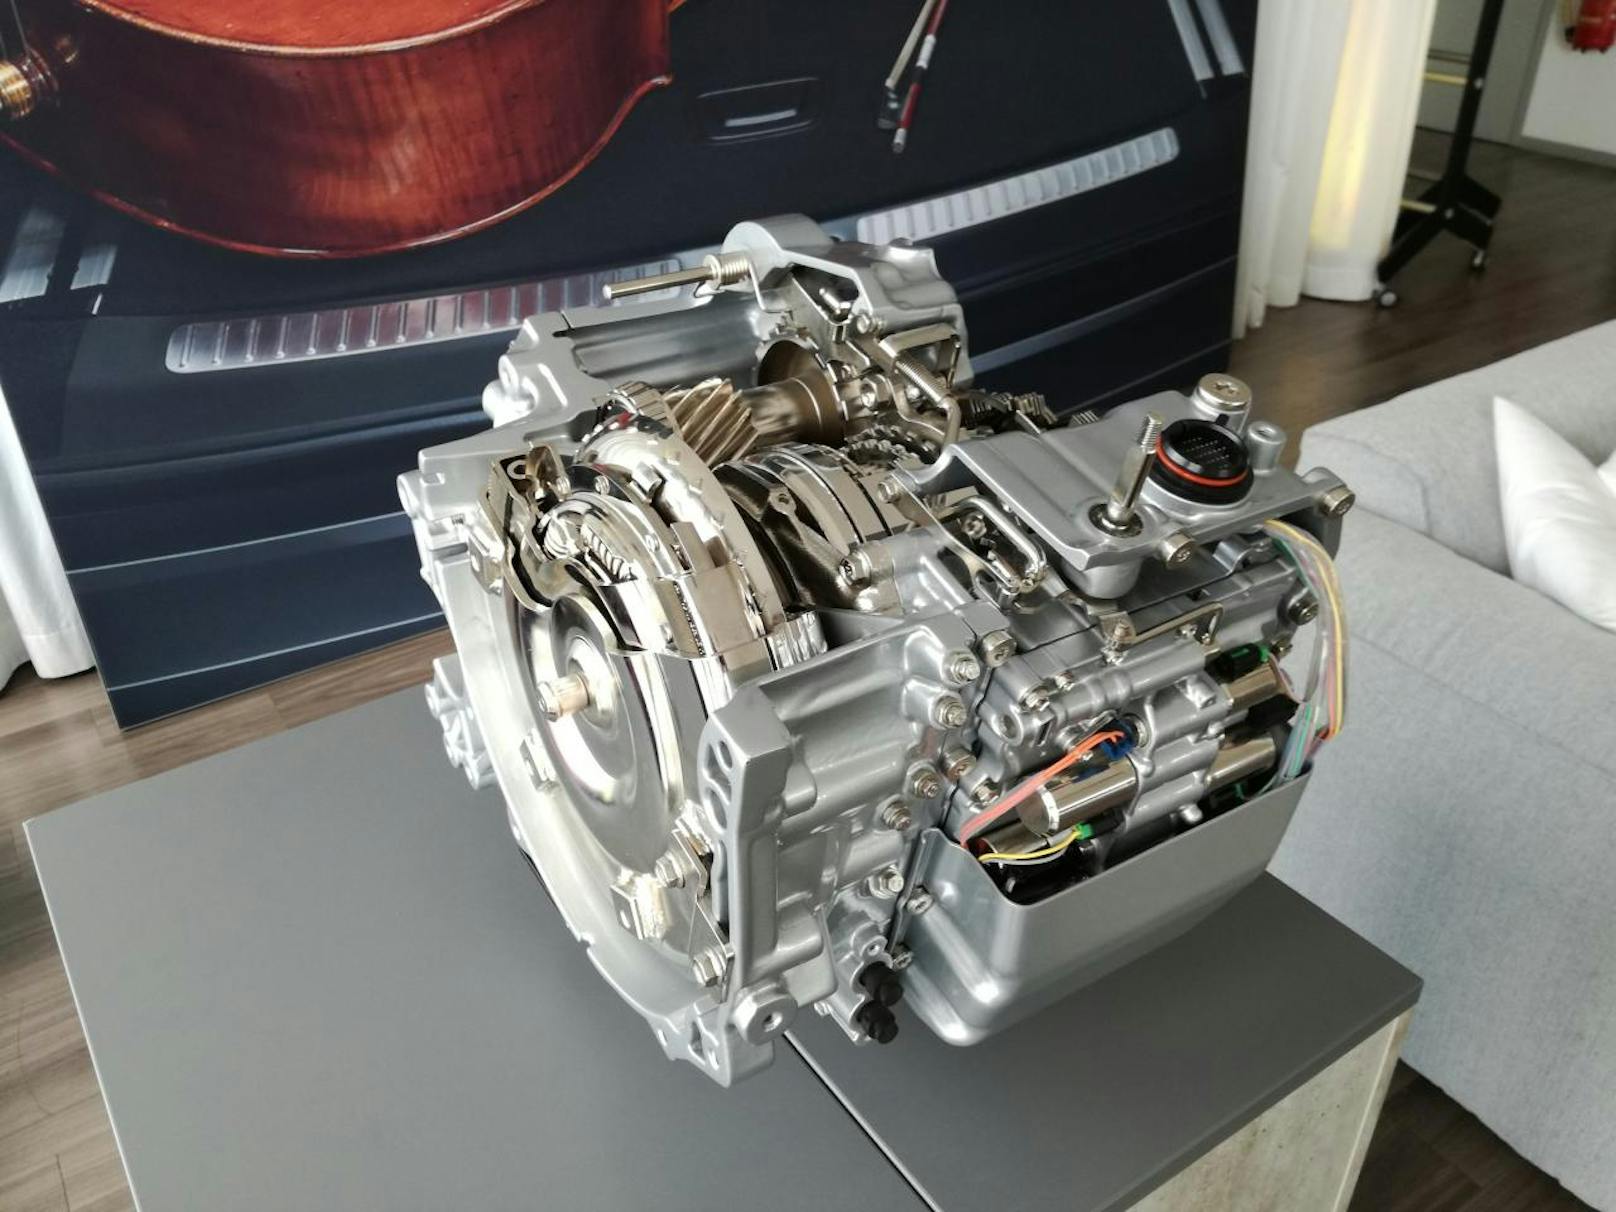 Erstmals wurde bei Opel ein 8-Gang-Automatik-Getriebe verbaut.